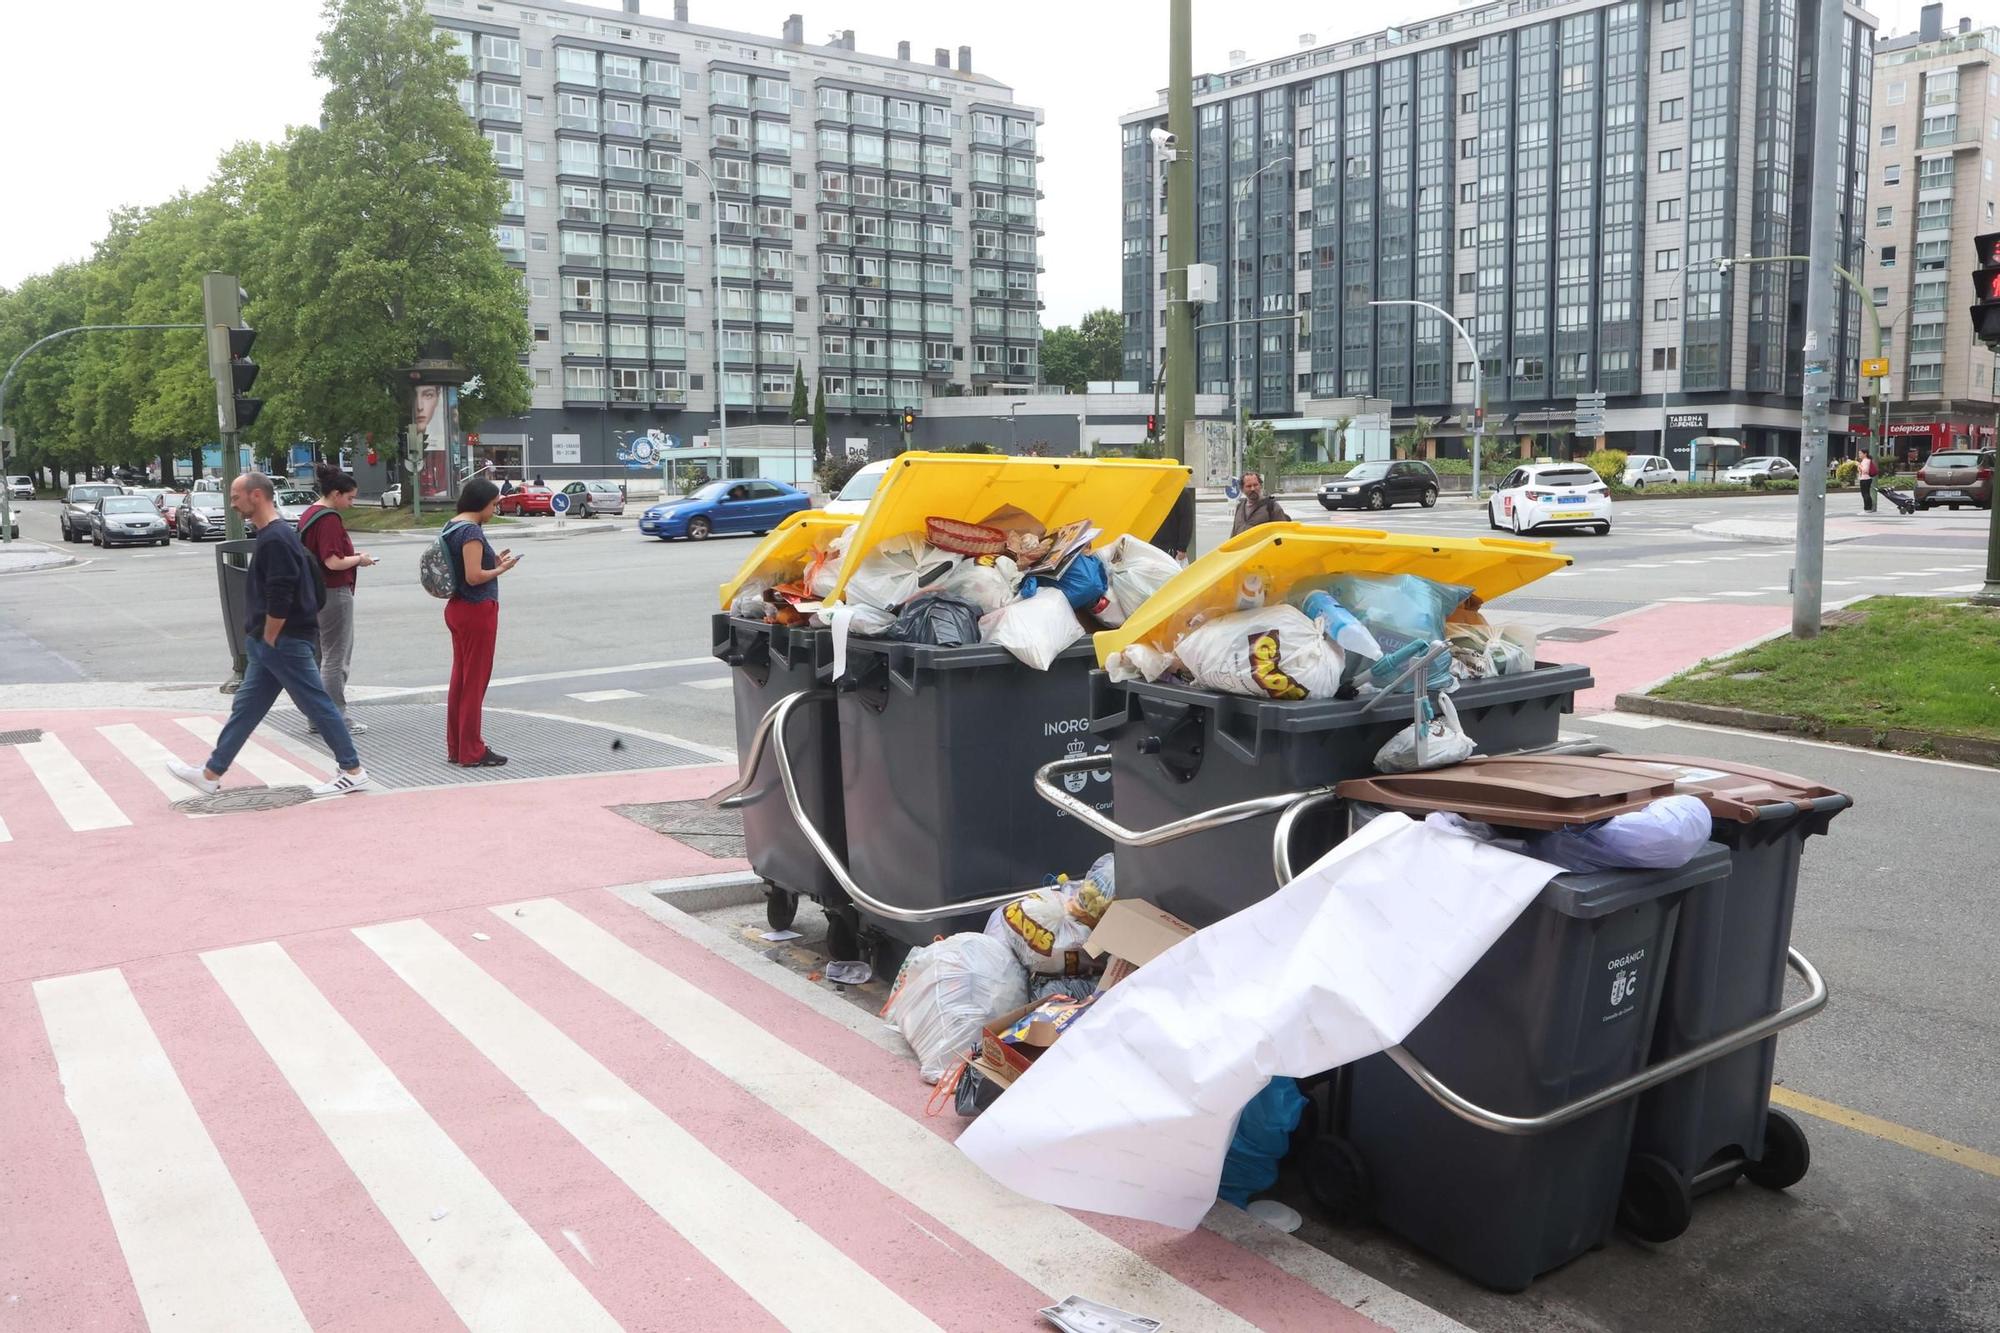 Huelga de la recogida de basuras en A Coruña: los desperdicios desbordan los contenedores